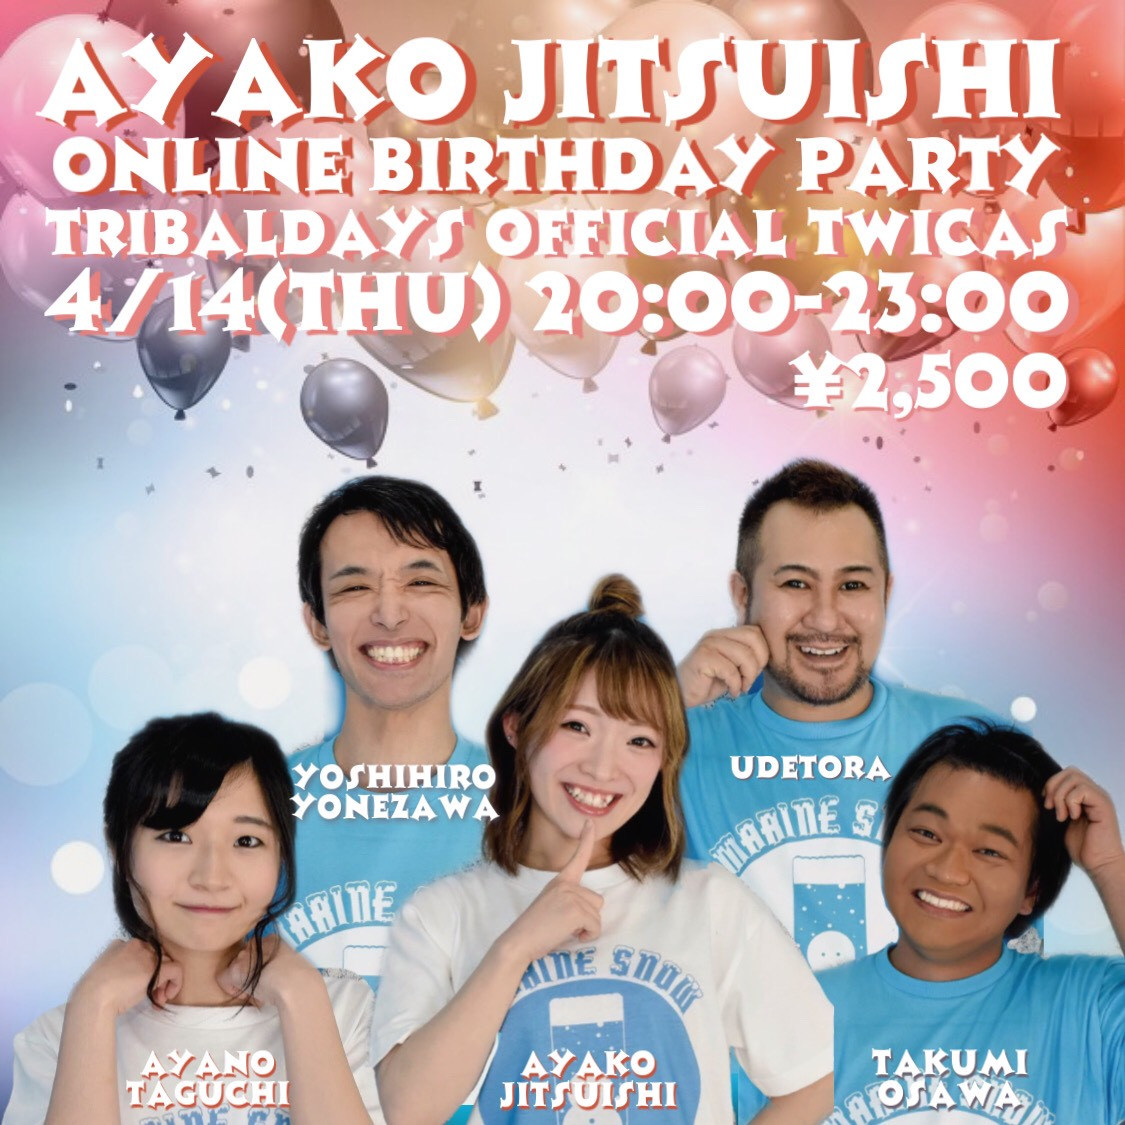 腕トラ 米澤佳裕 田口綾乃 大澤拓巳 實石亜也子 21 04 14 水 Ayako Jitsuishi Online Birthday Party Tribal Days